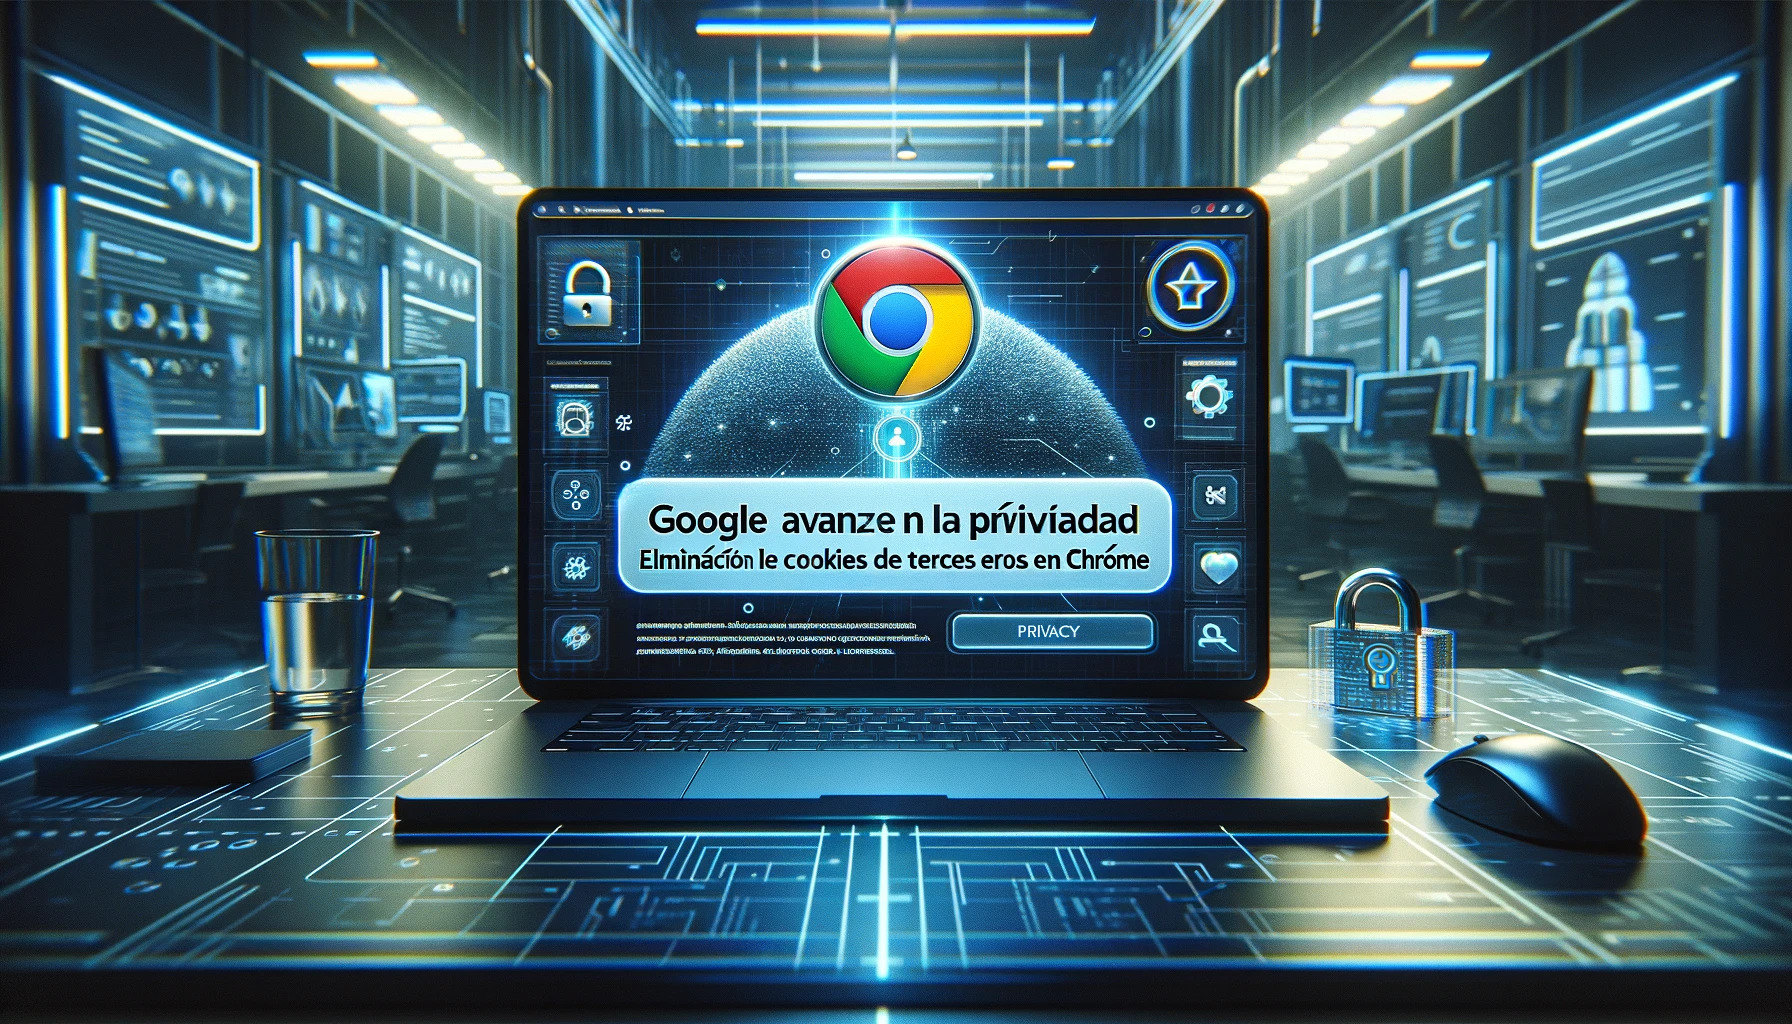 Google avanza en la privacidad: Eliminación de cookies de terceros en Chrome